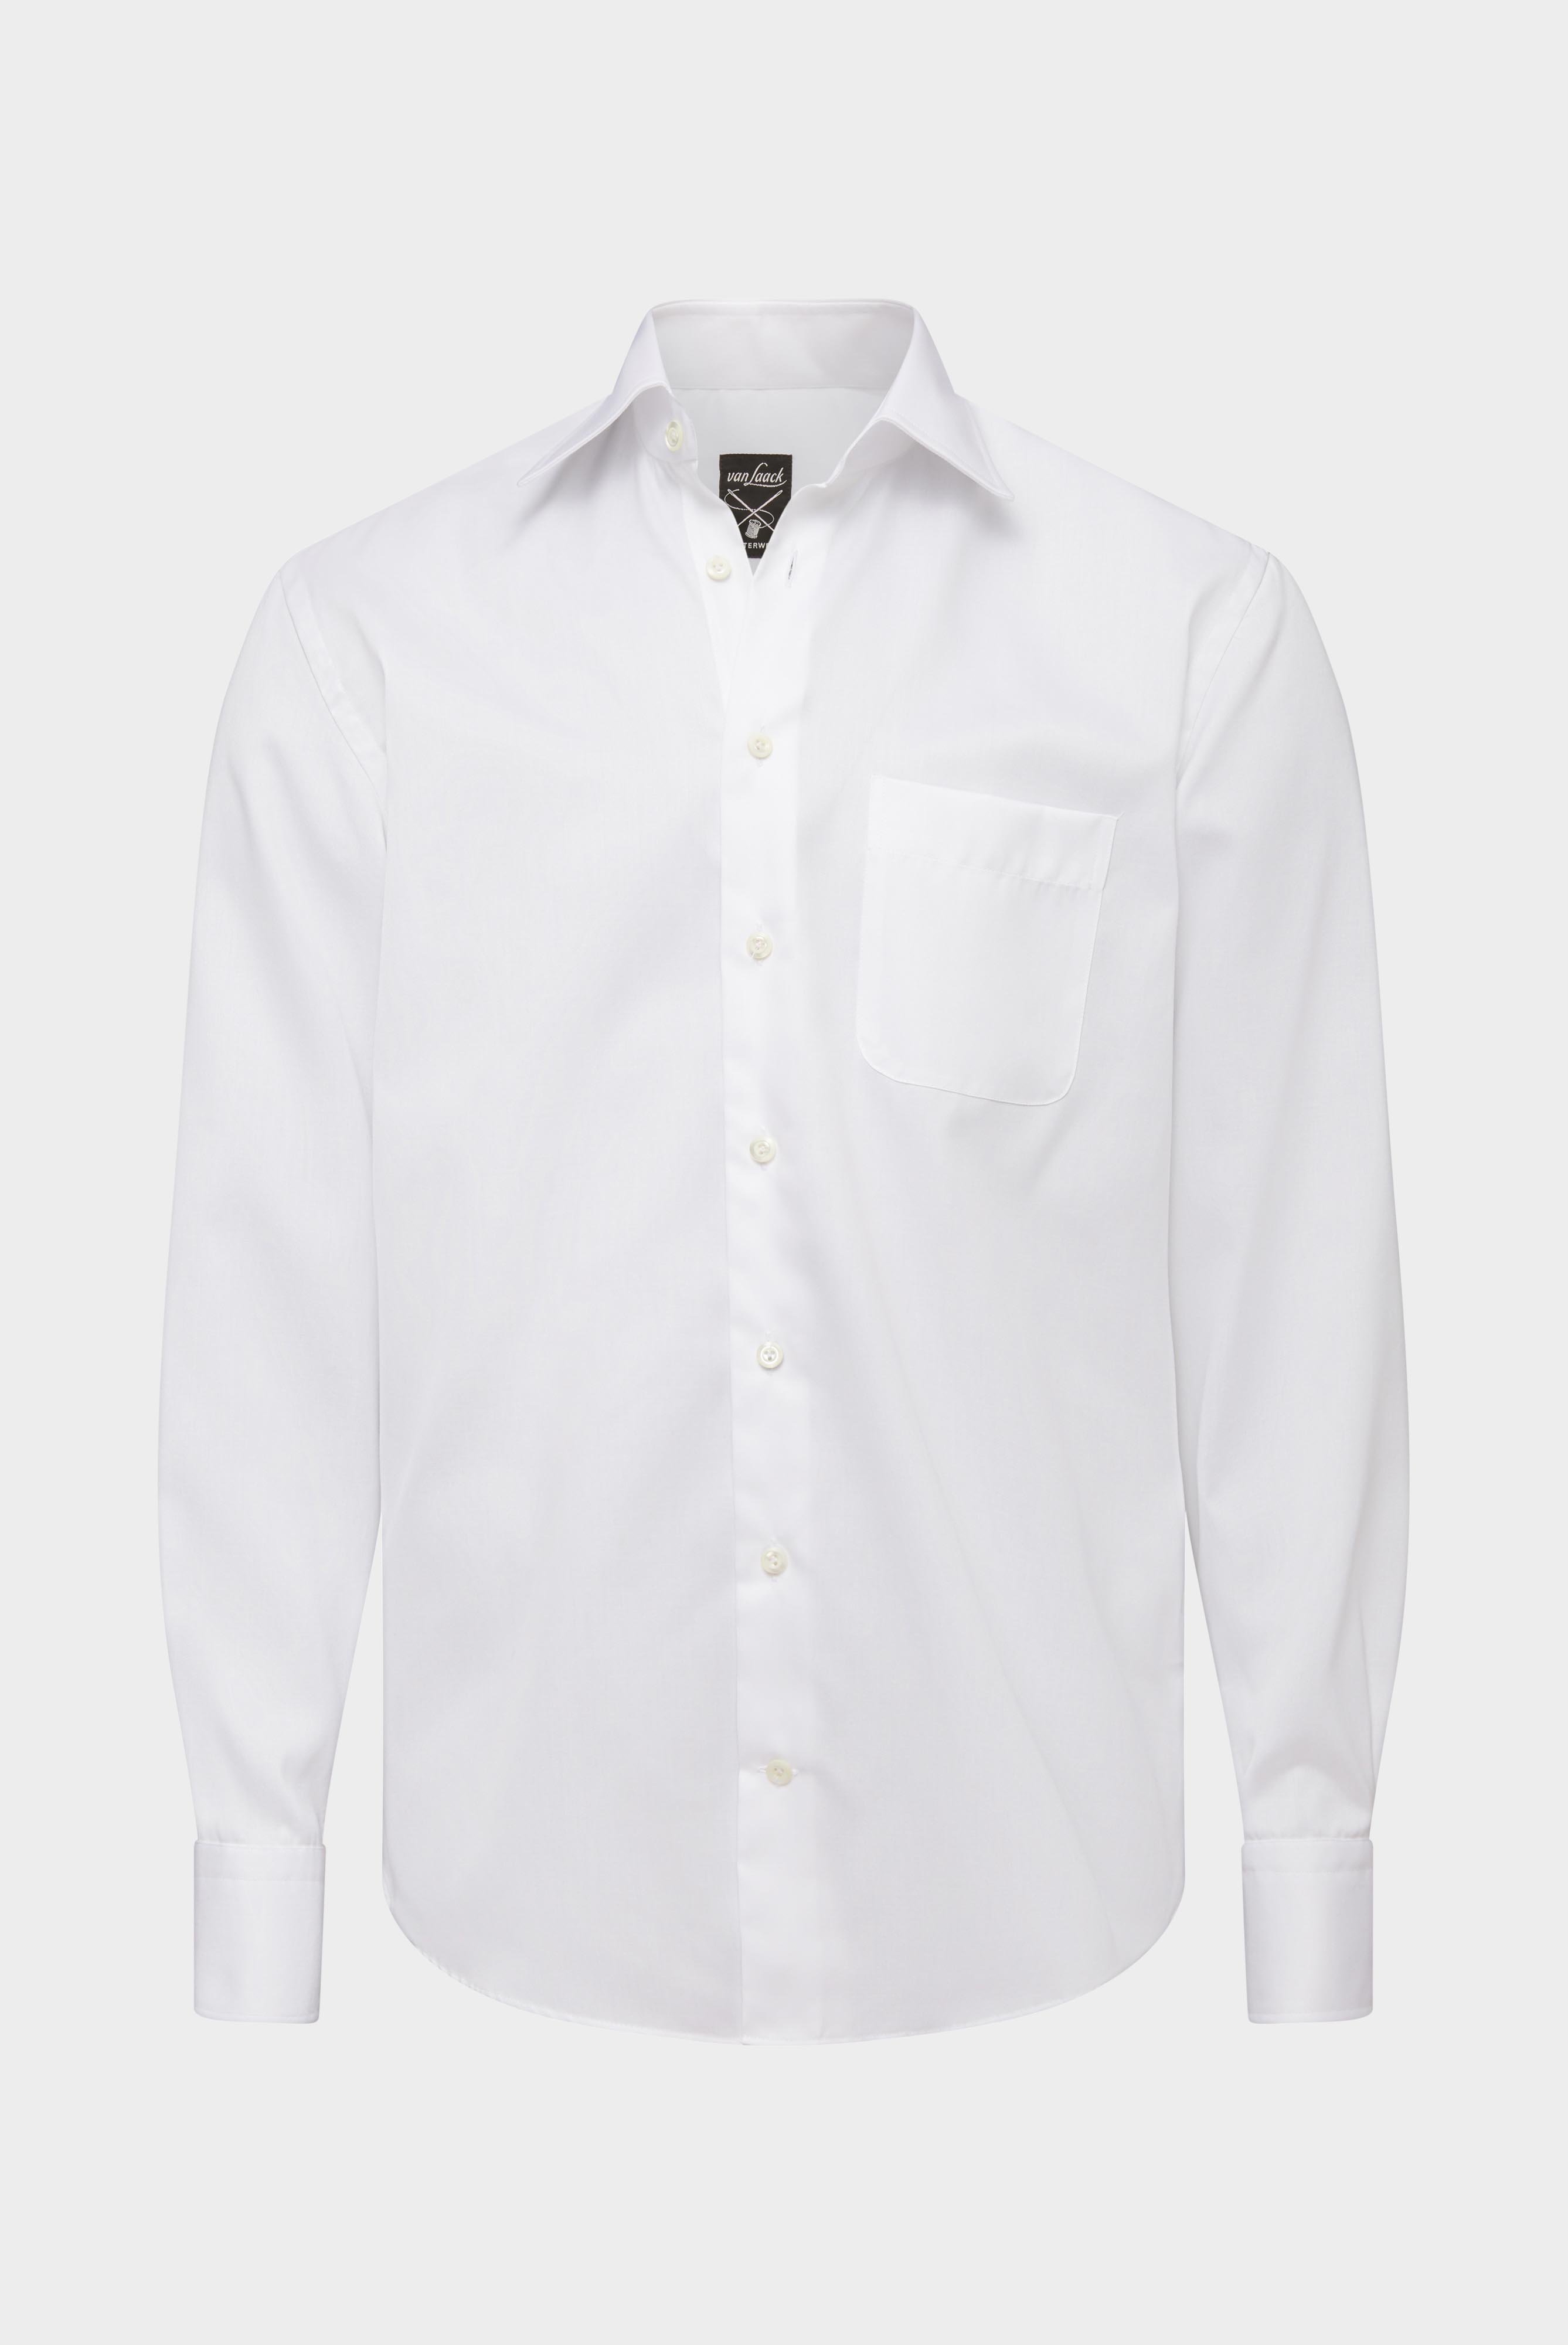 Bügelleichte Hemden+Bügelfreies Twill Hemd Comfort Fit+20.2046.BQ.132241.000.37